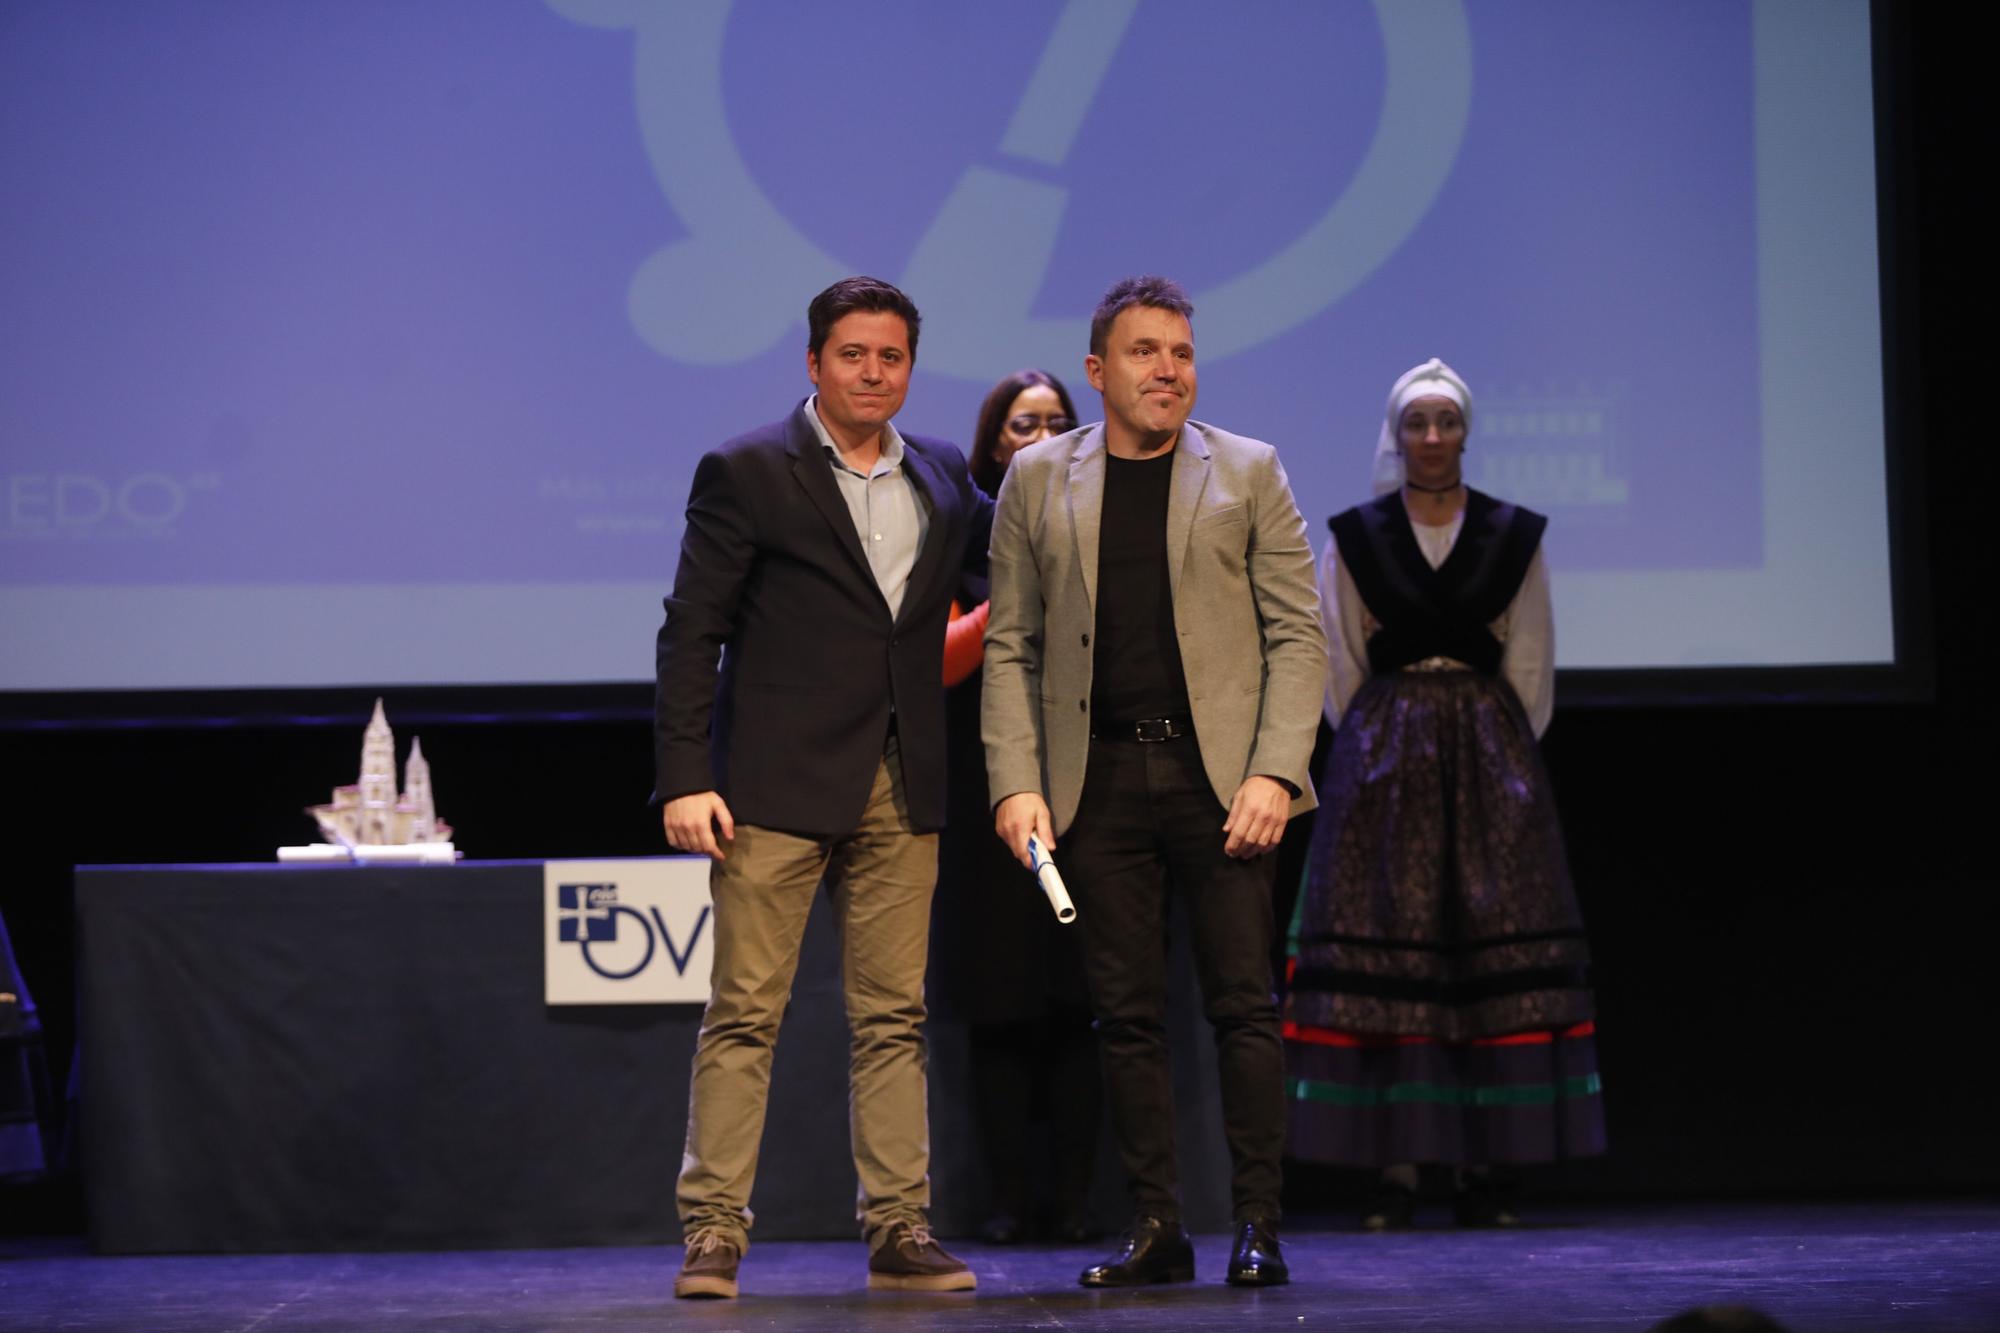 EN IMÁGENES: Así fue la final del concurso de canción asturiana "Ciudad de Oviedo"